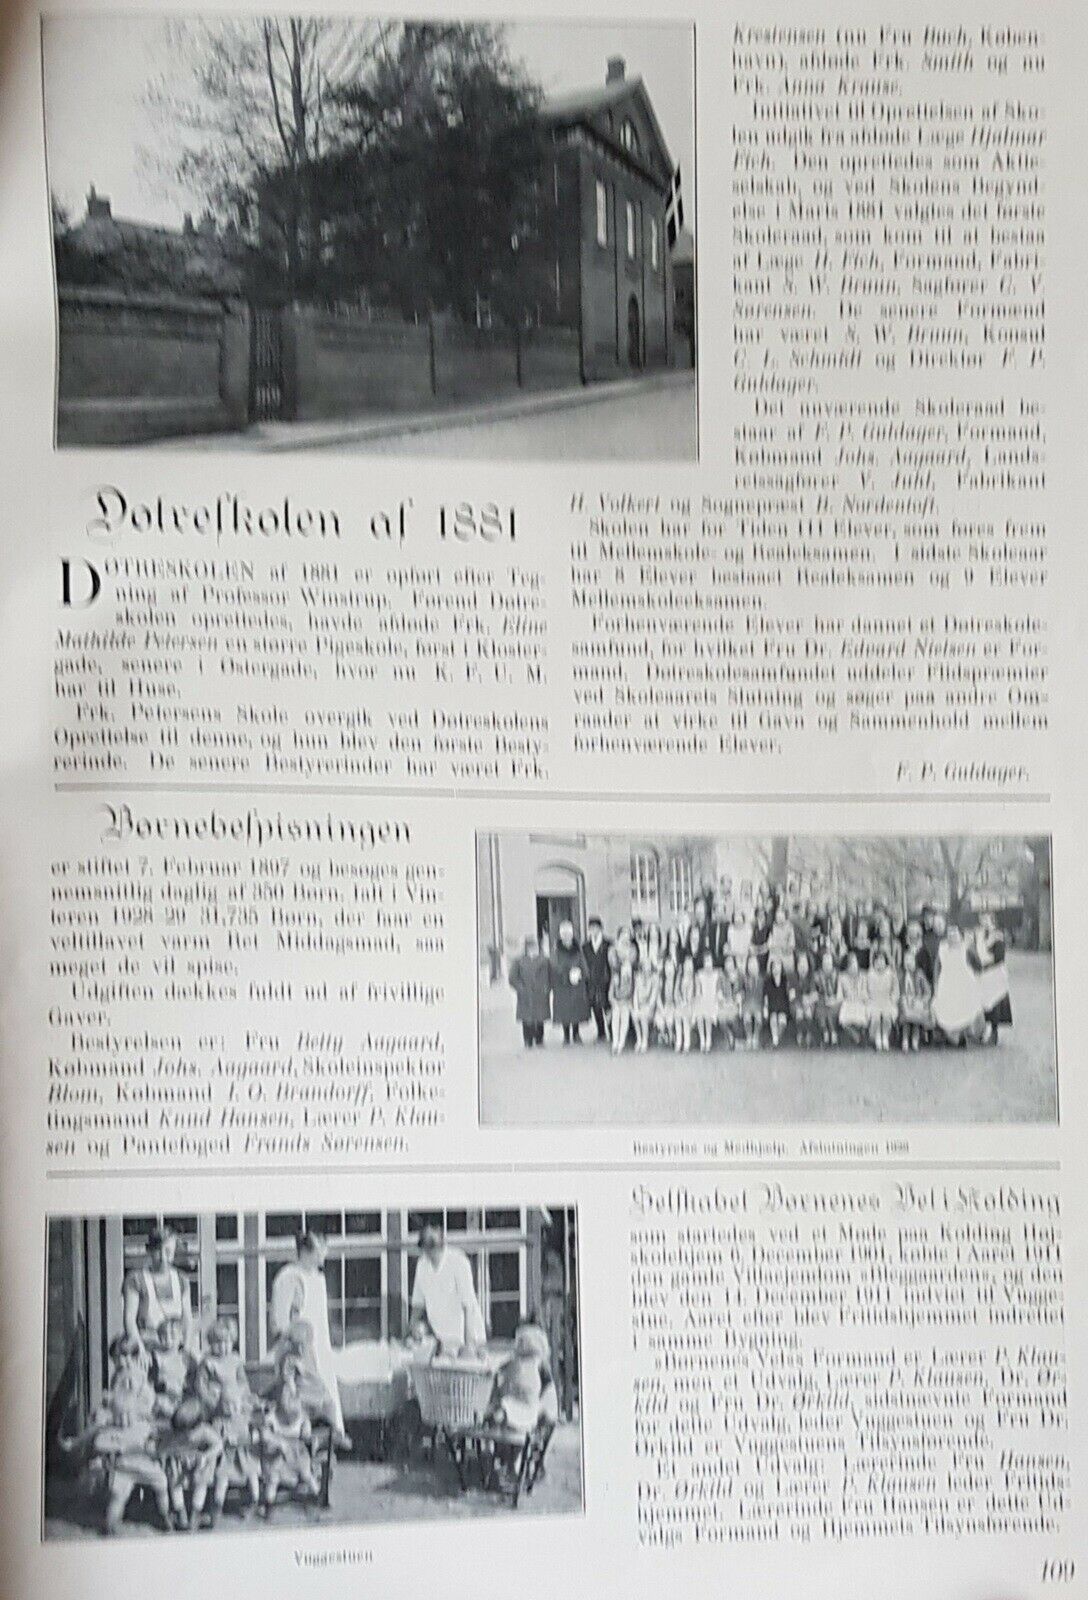 Kolding - egnshistorie omkring 1930, V. Schæffers forlag,